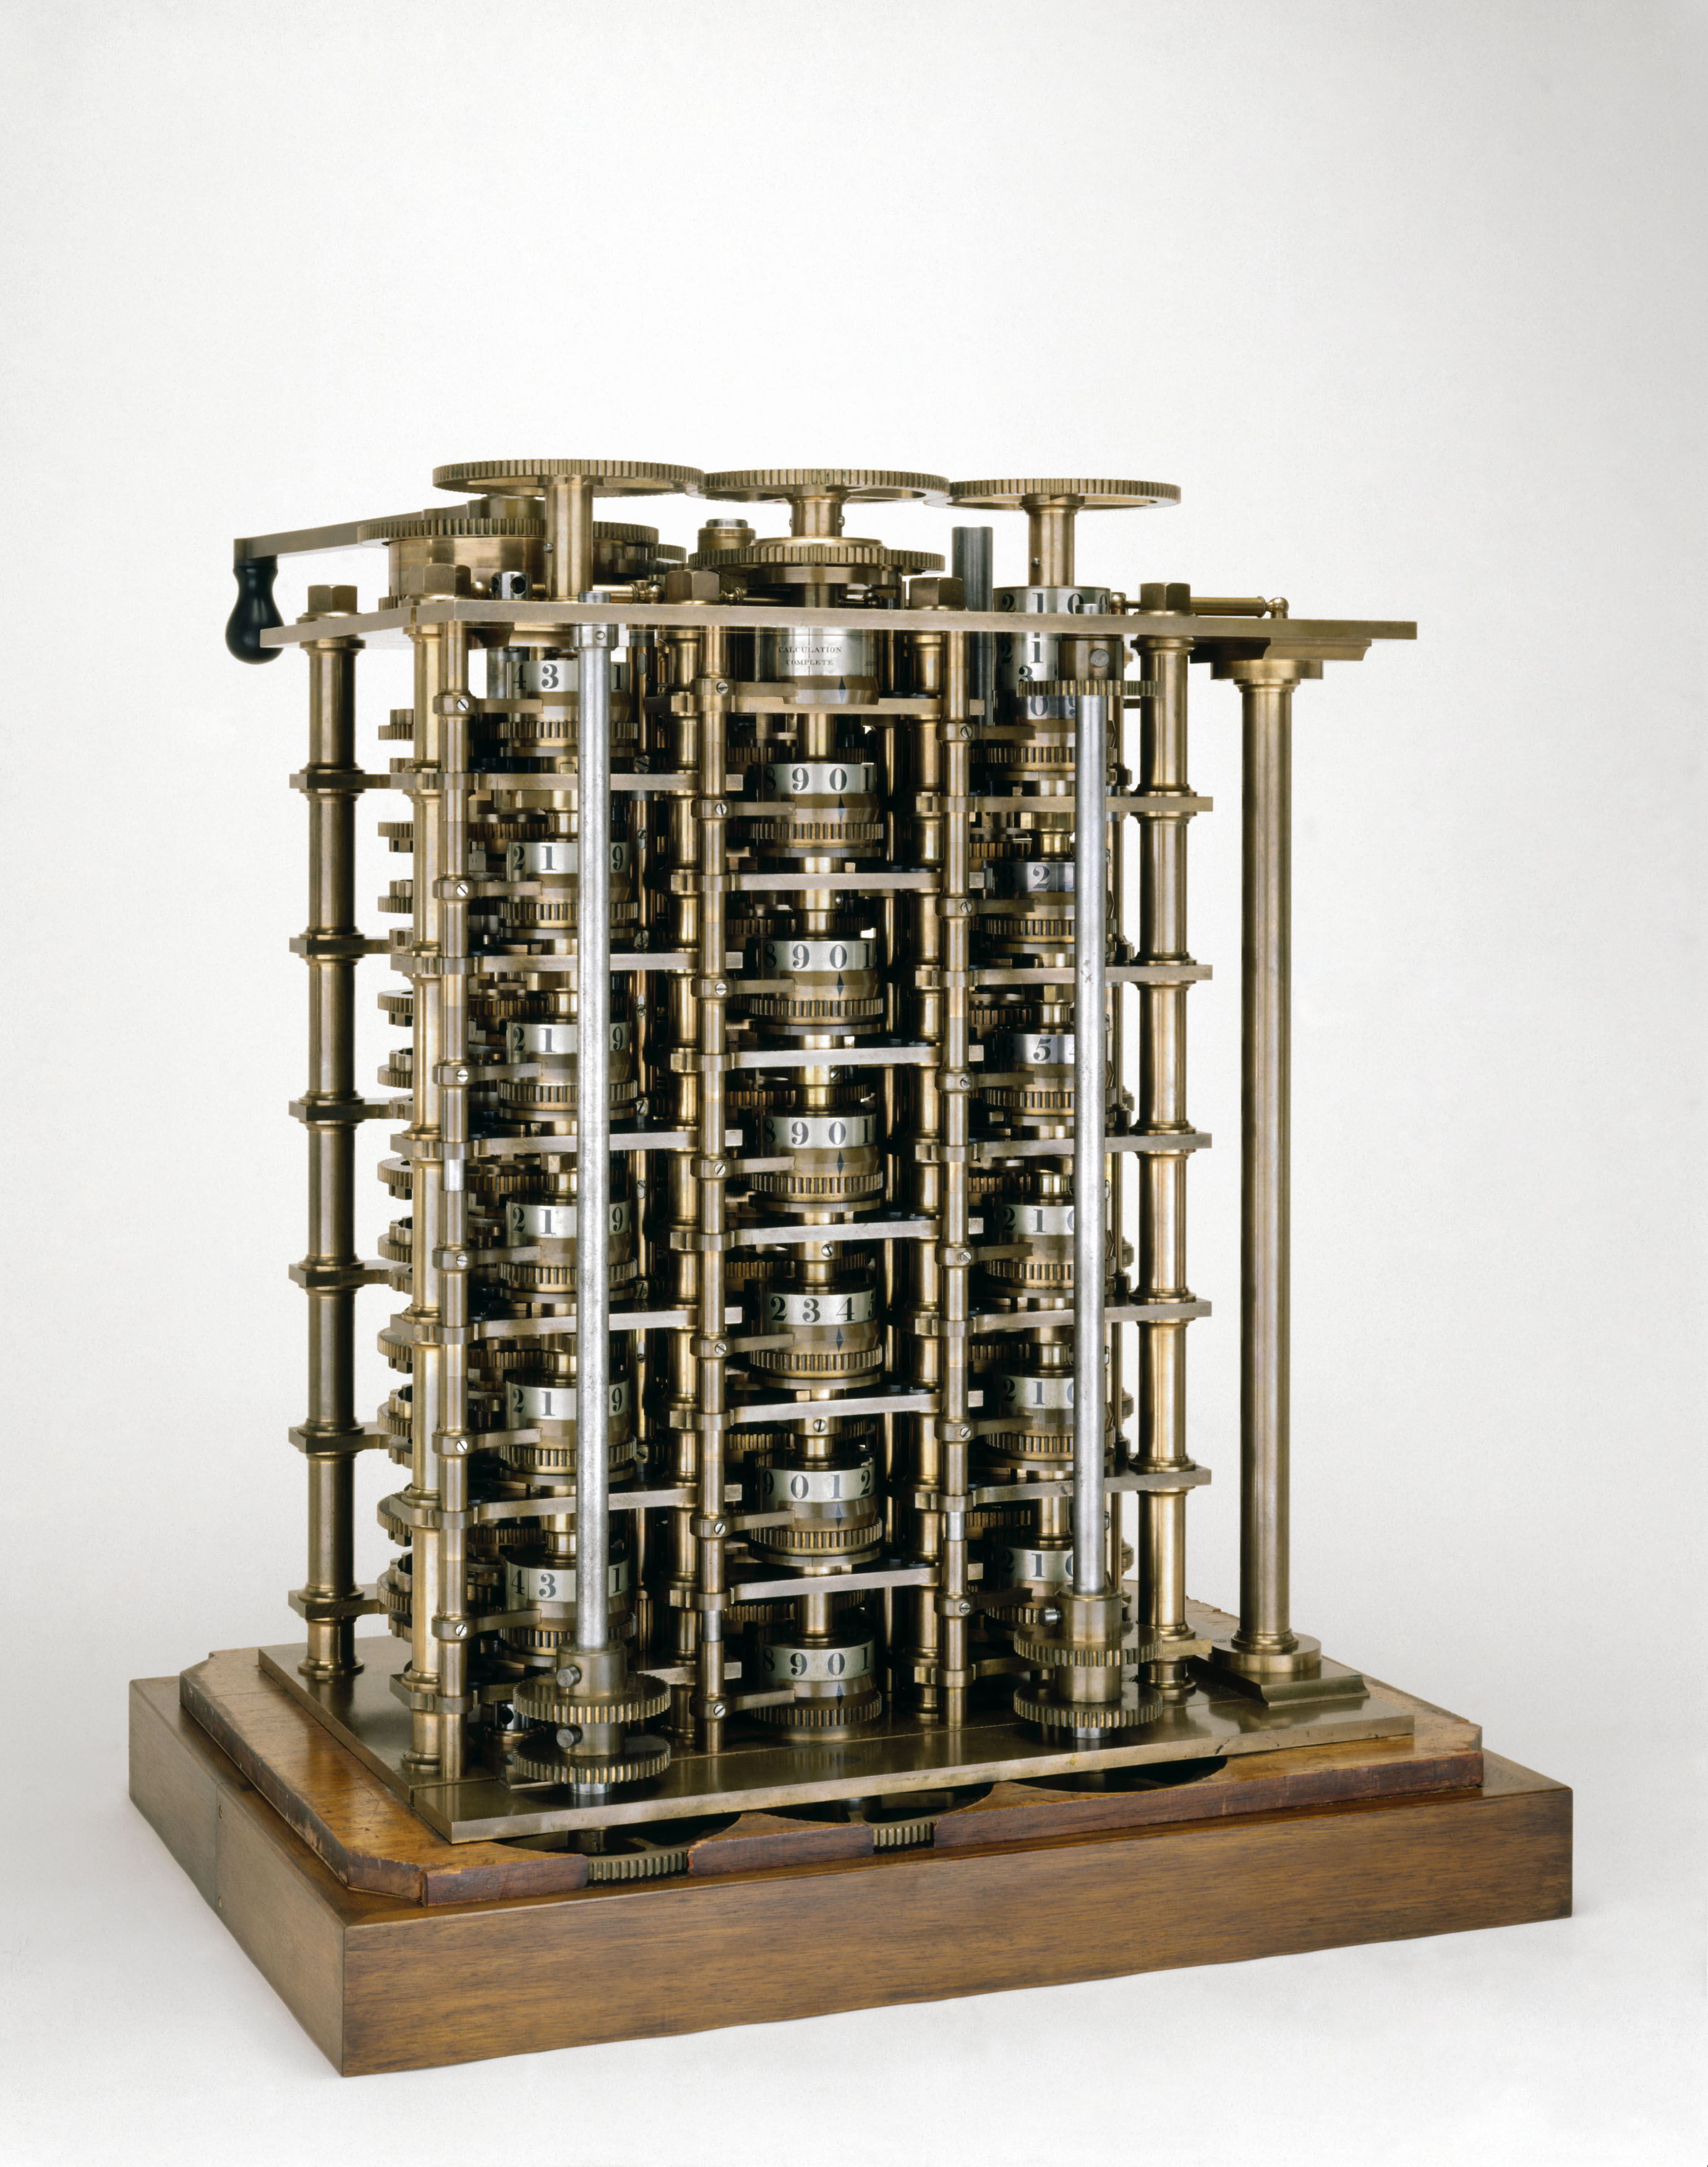 Первая автоматическая машина. Разнорстная машина Чарльза Бэб. Аналитическая машина Чарльза Бэббиджа. Разостнаф машина Чарльза Бебиджа.